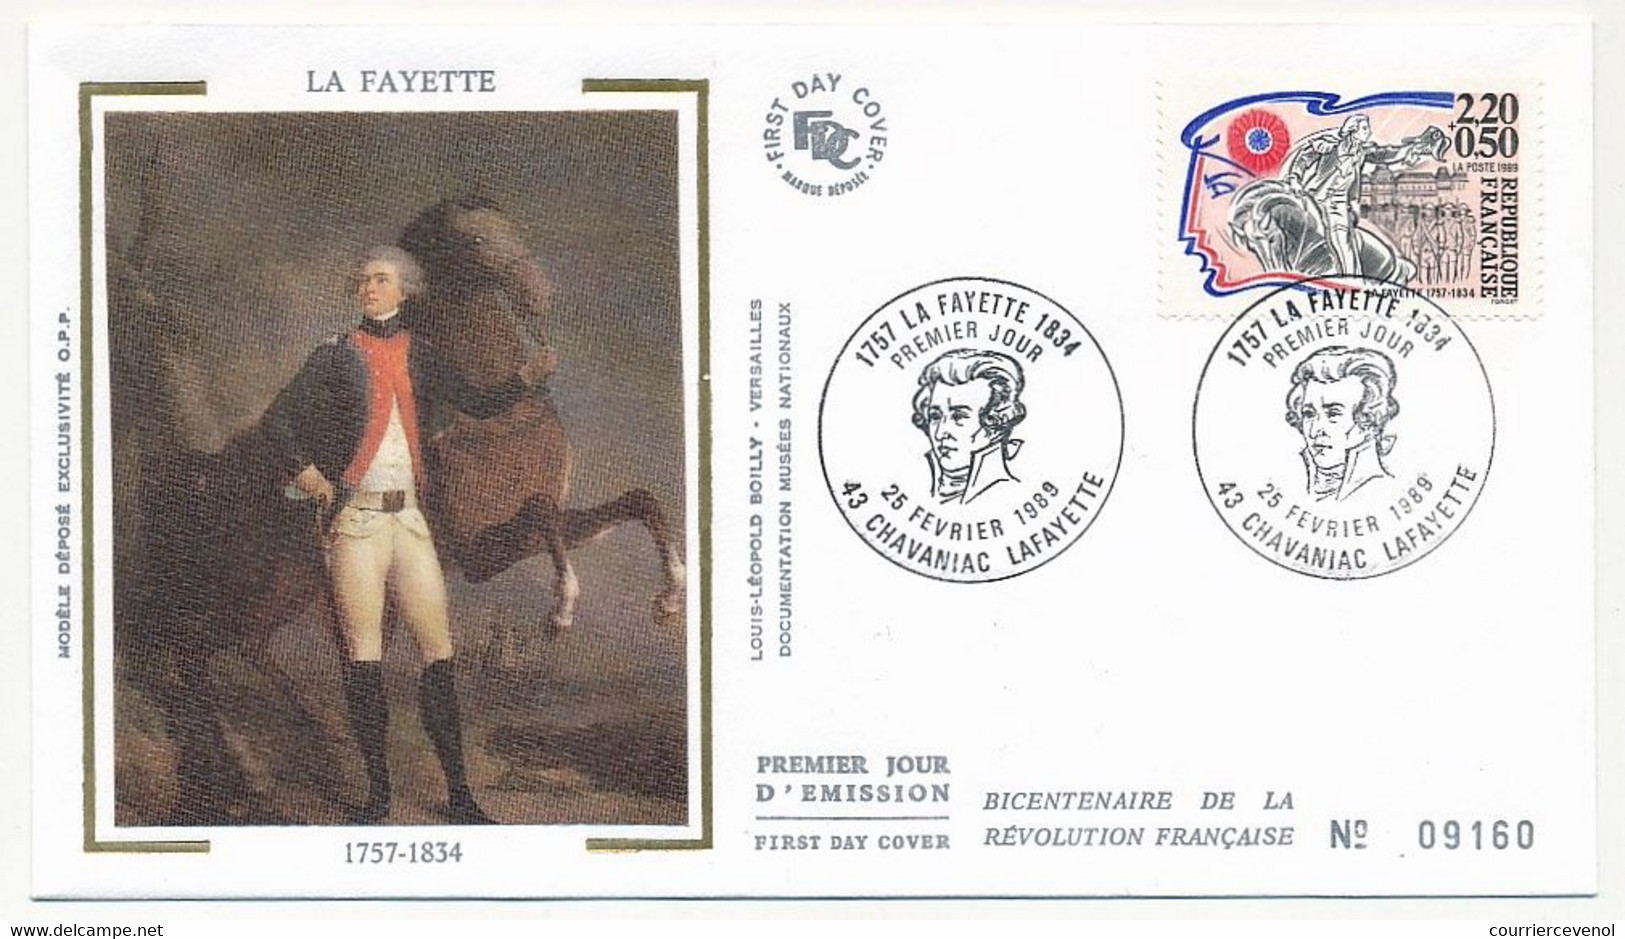 FRANCE => 8 Enveloppes FDC Soie - Personnages de la Révolution - Drouet, Mirabeau, Sieyes, Layayette, De Noailles ..1989